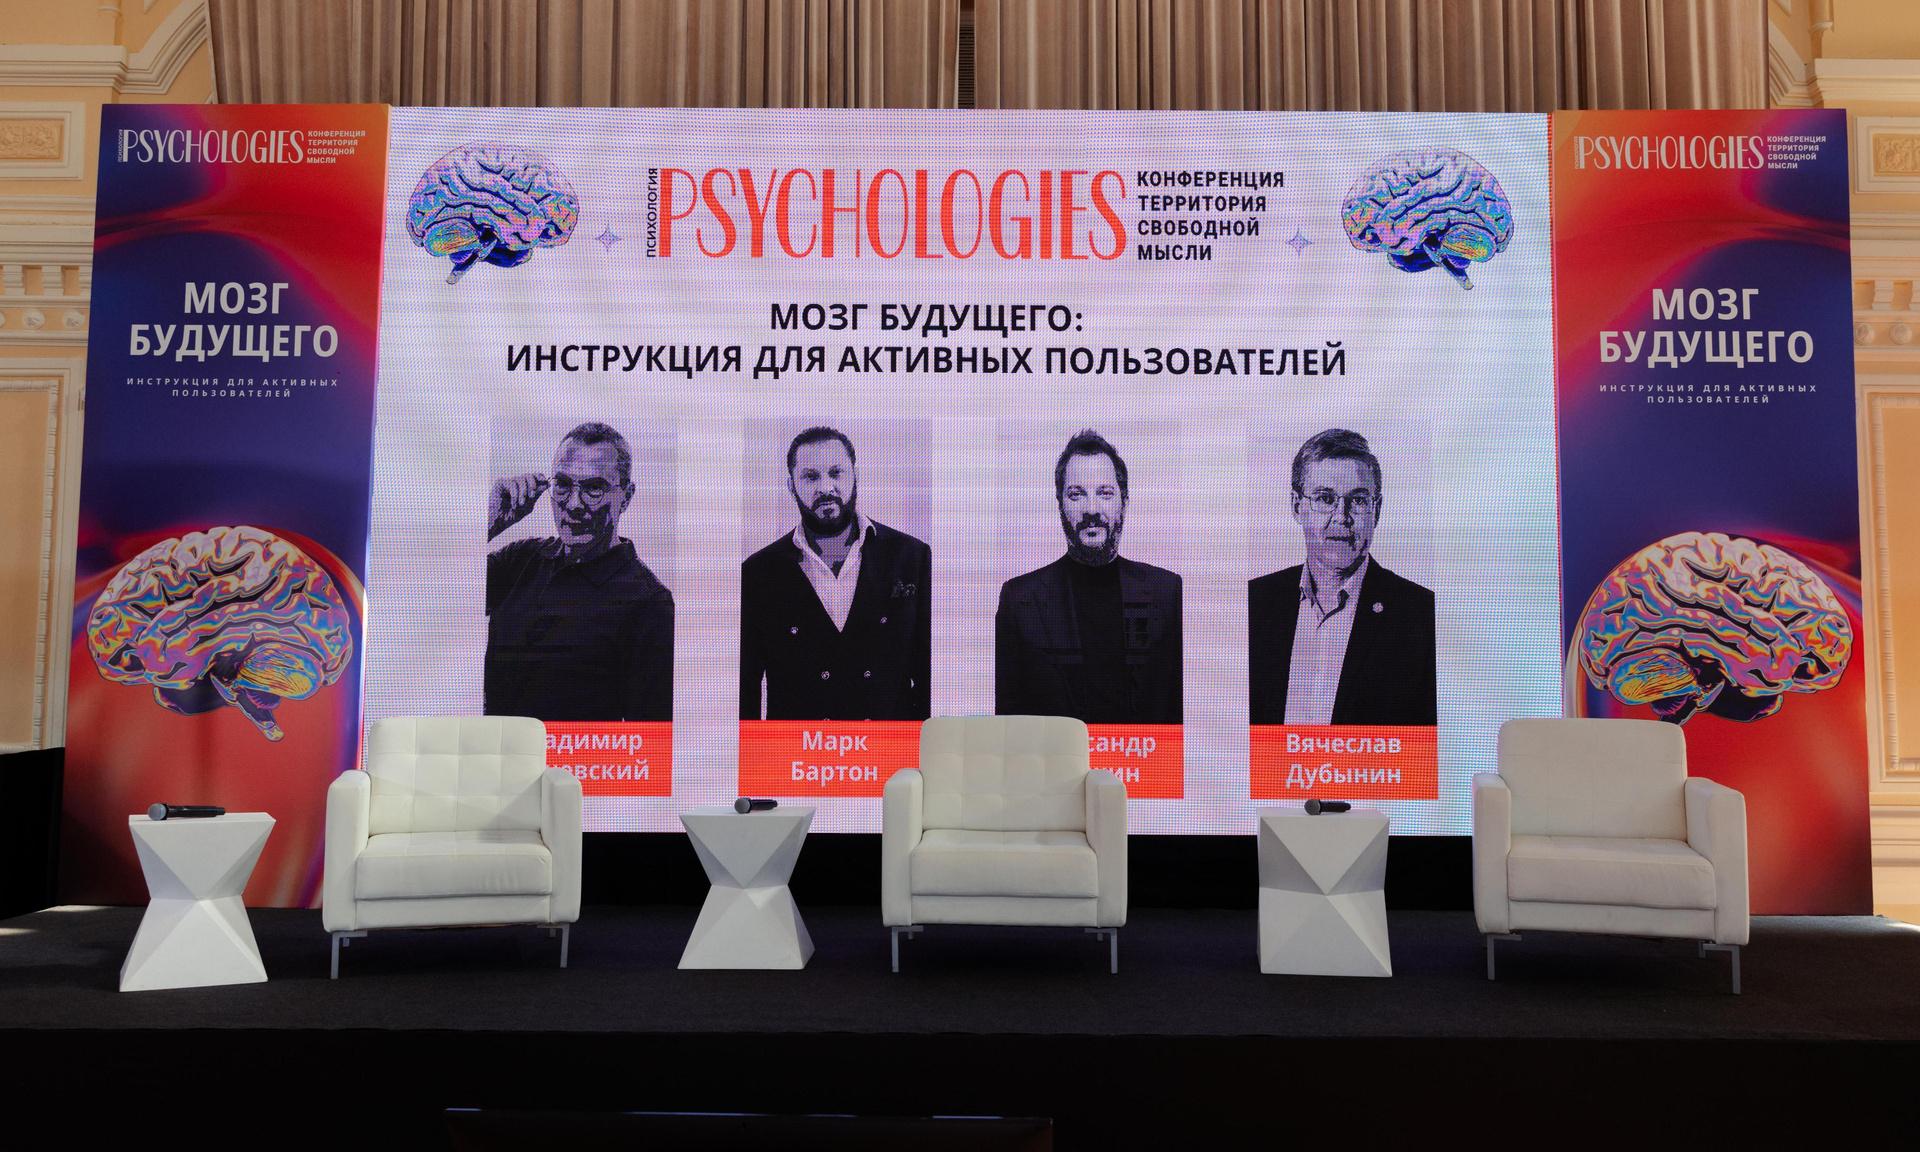 Как прошла конференция Psychologies со звездными экспертами в трех городах России в апреле